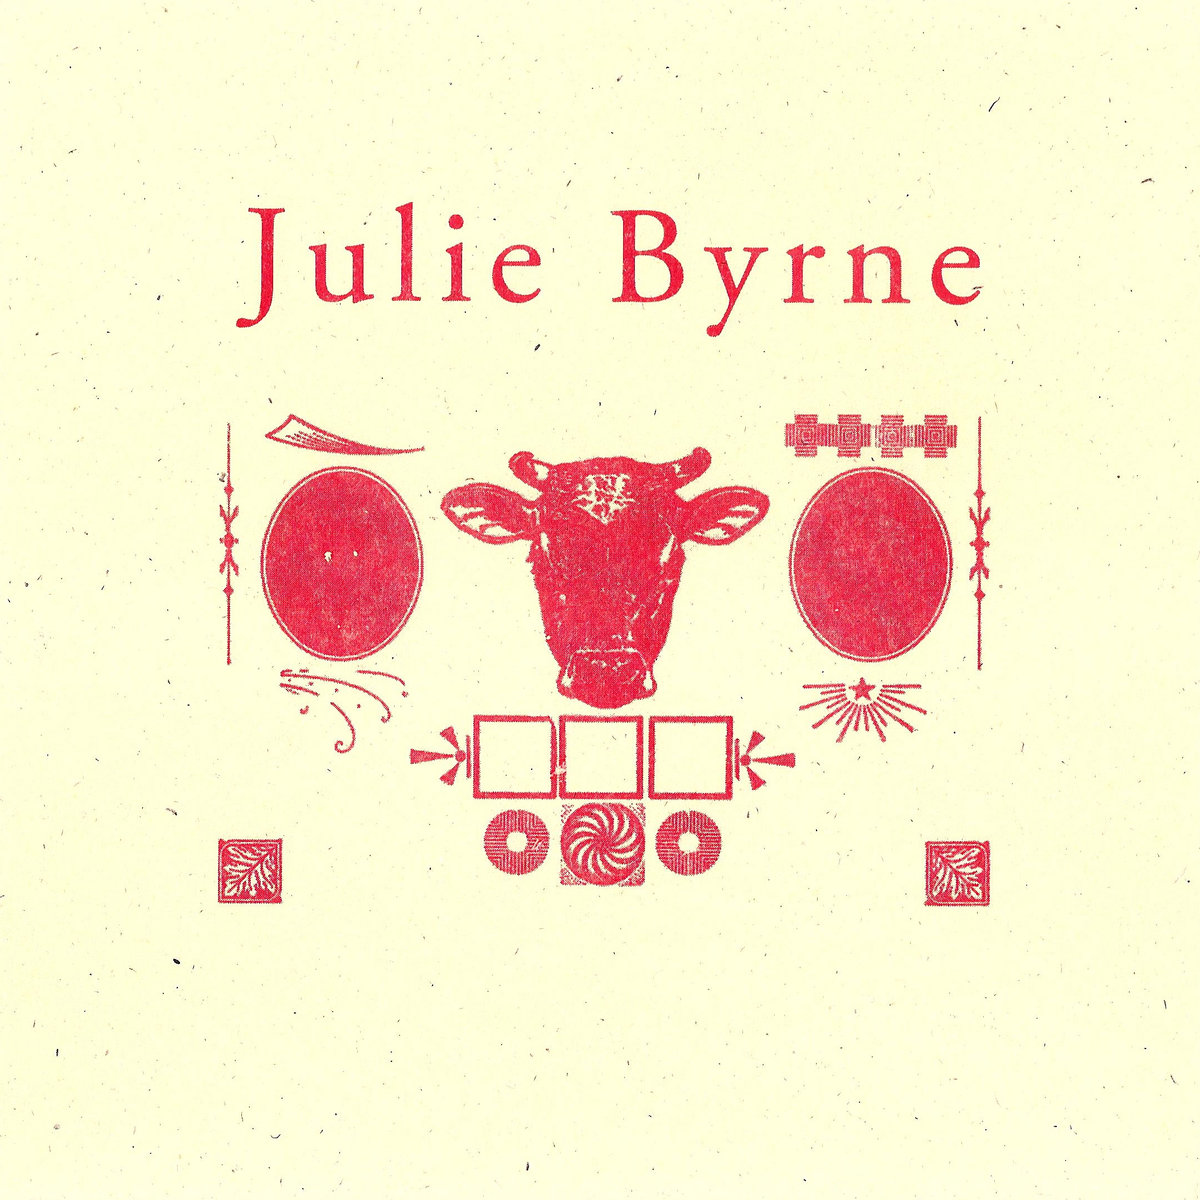 Julie Byrne "Faster or Greener than Now"